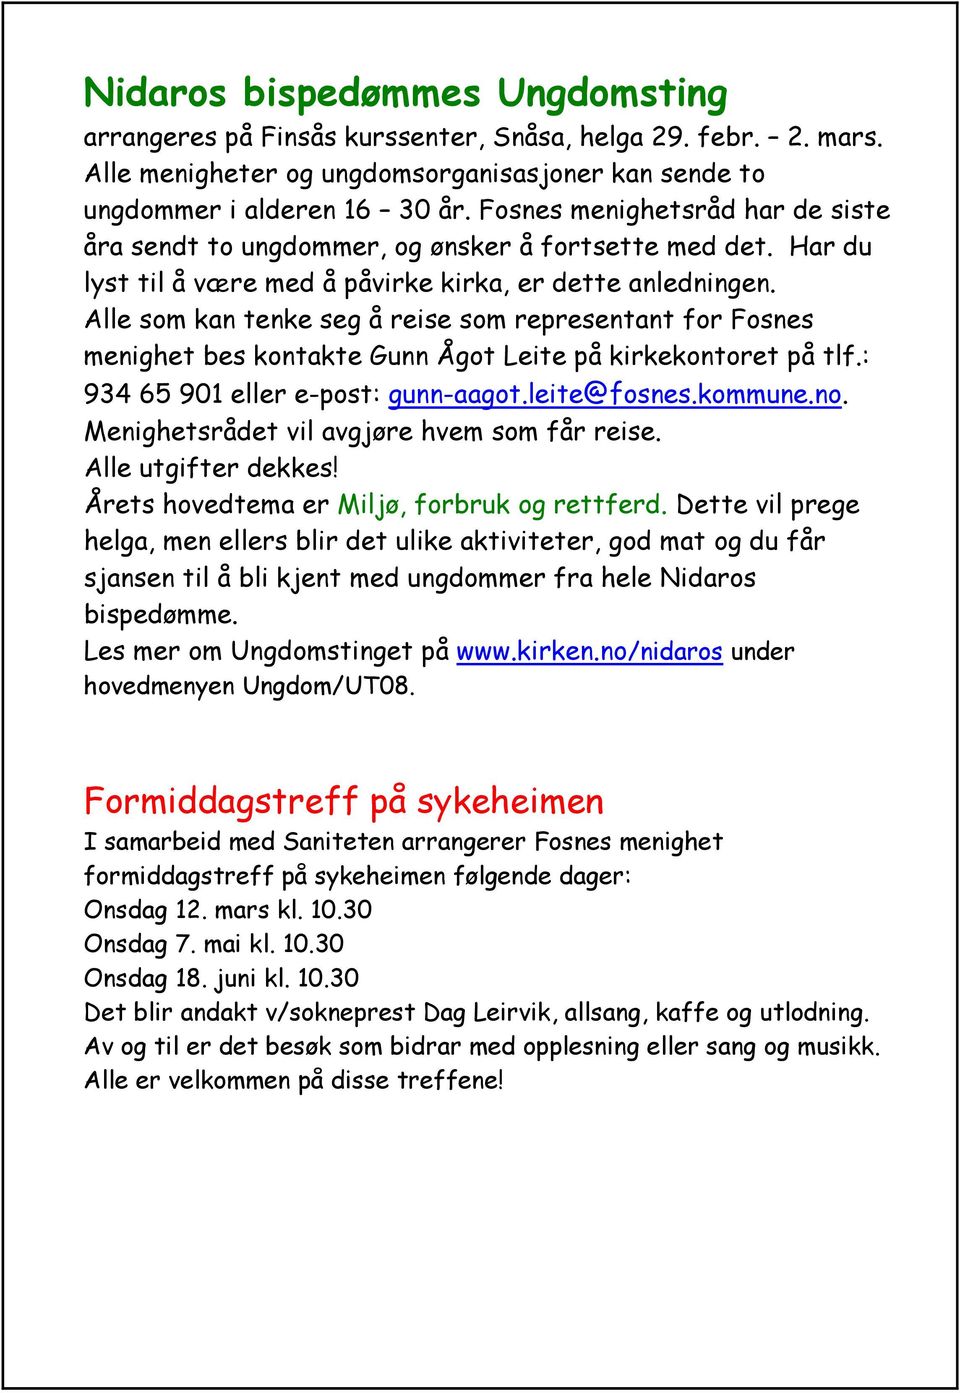 Alle som kan tenke seg å reise som representant for Fosnes menighet bes kontakte Gunn Ågot Leite på kirkekontoret på tlf.: 934 65 901 eller e-post: gunn-aagot.leite@fosnes.kommune.no.